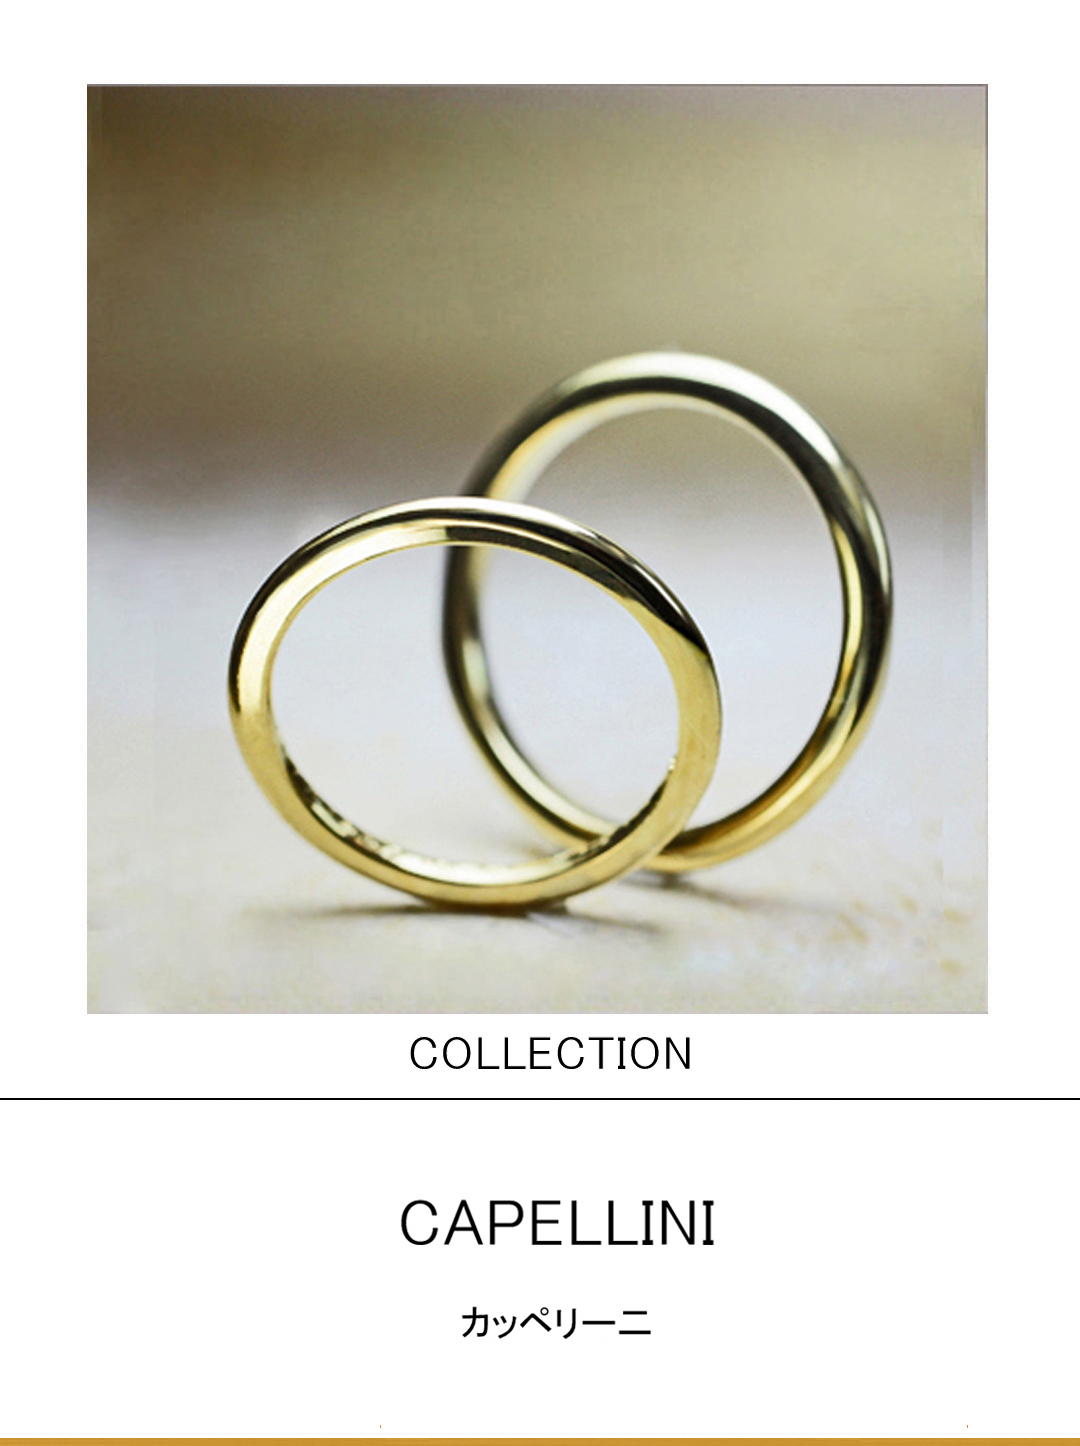 極細のパスタ・カッペリー二をコンセプトにしたゴールドの結婚指輪のサムネイル